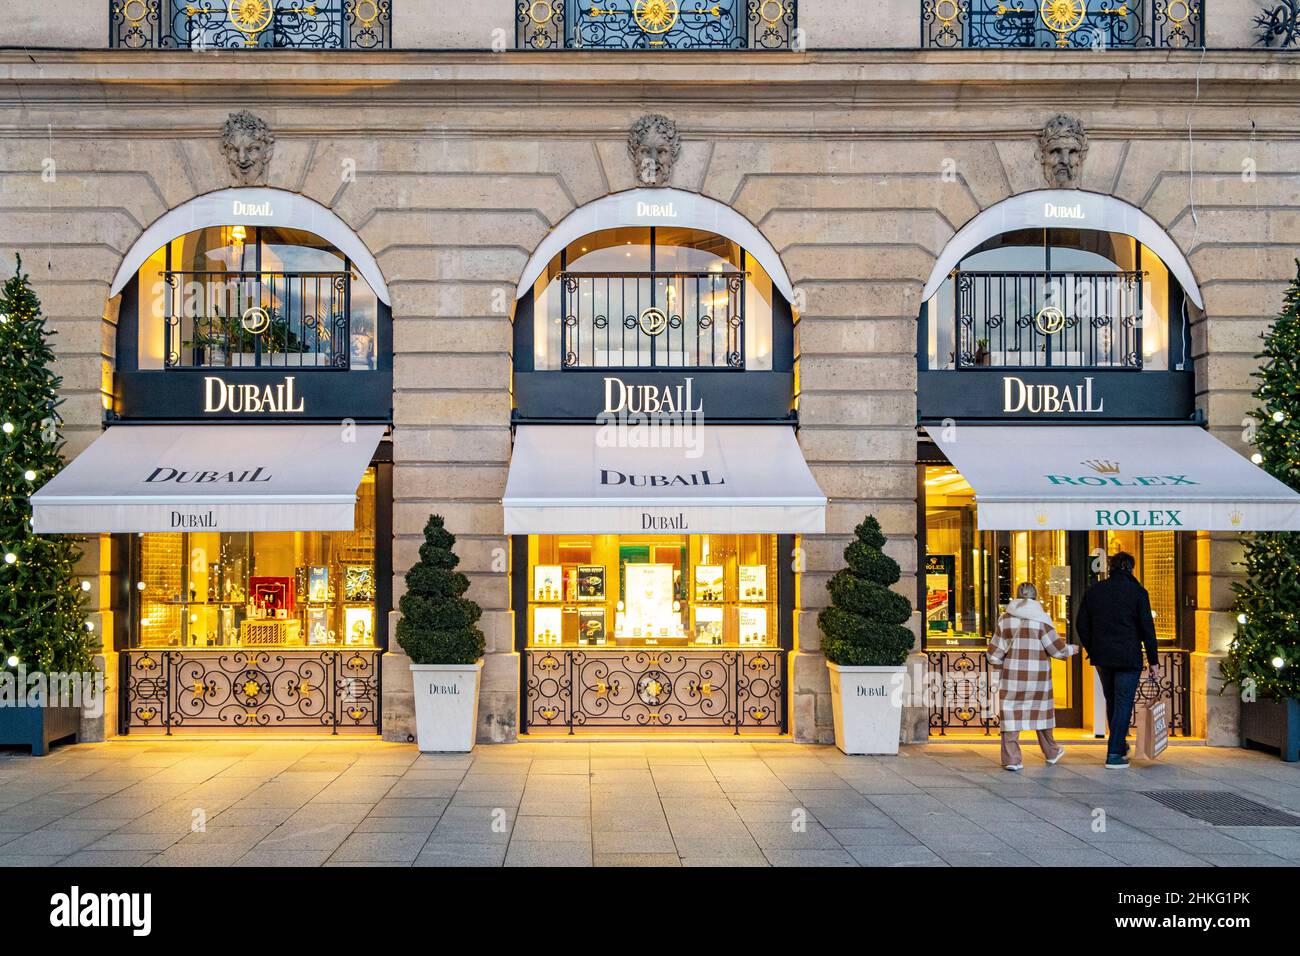 Shops in Place Vendome, Paris, France Stock Photo - Alamy